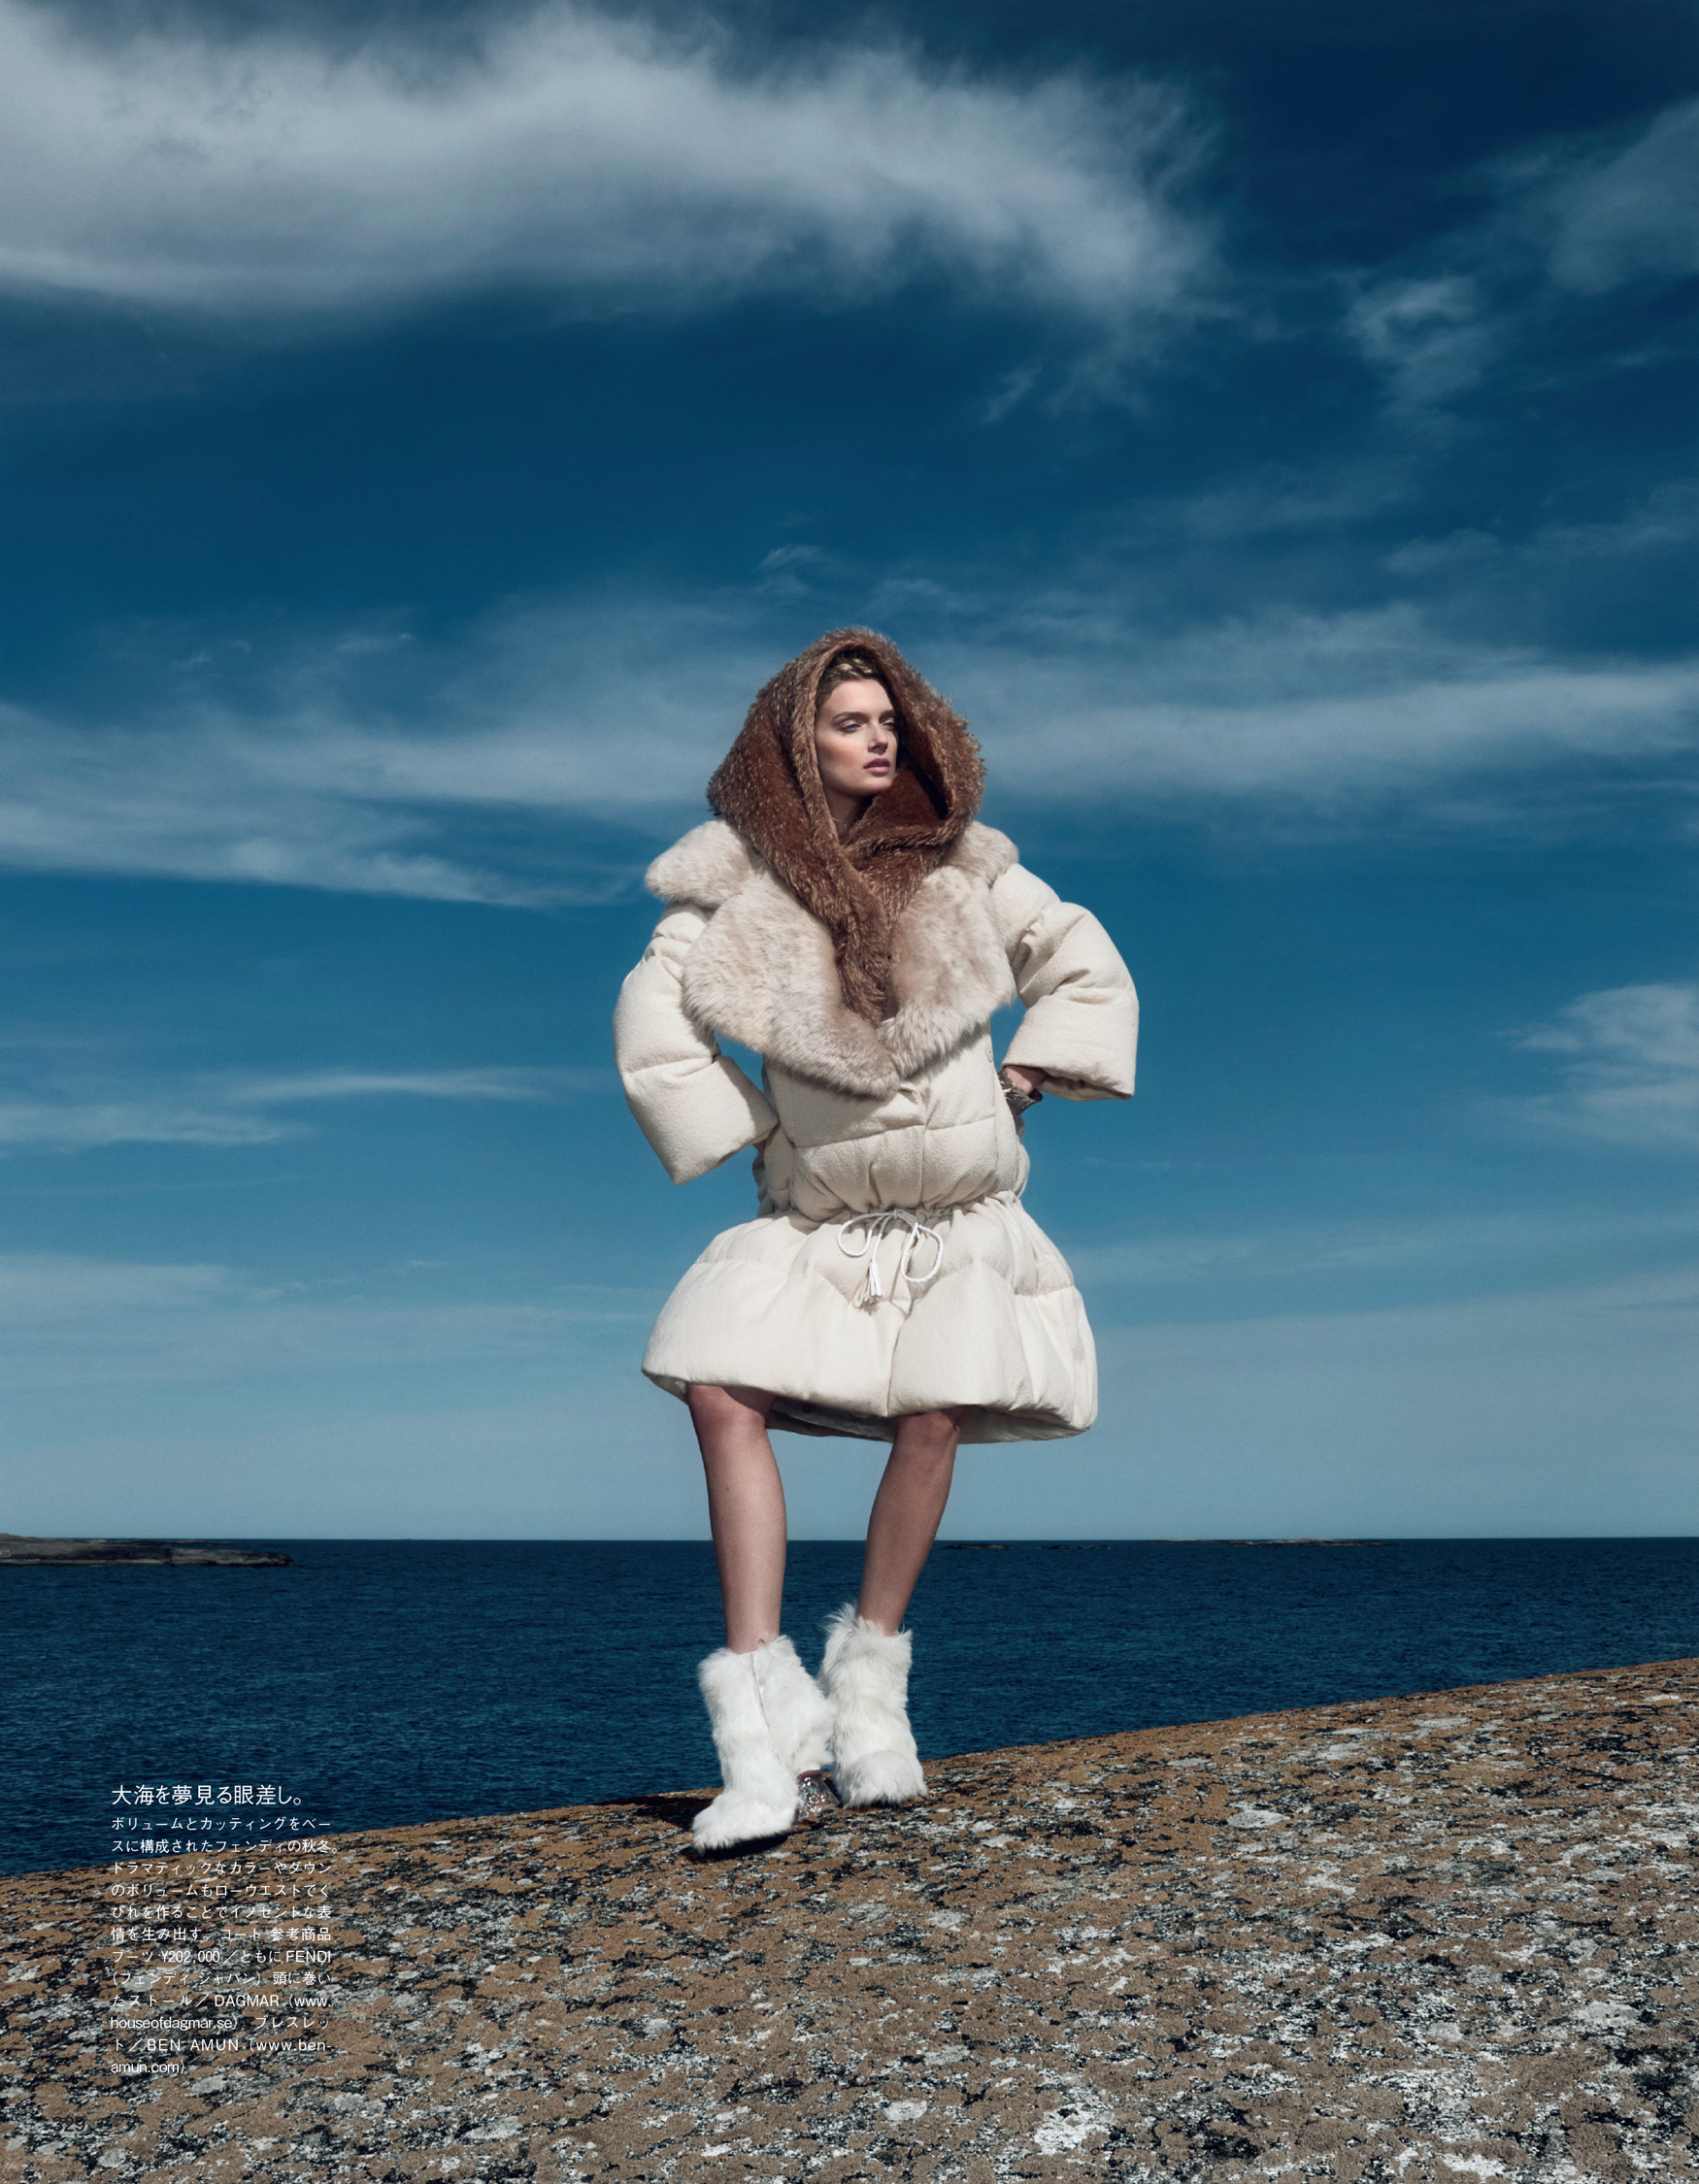 Giovanna-Battaglia-Vogue-Japan-The-Nordic-Queen-October-2015-Emma-Summerton-3.jpg